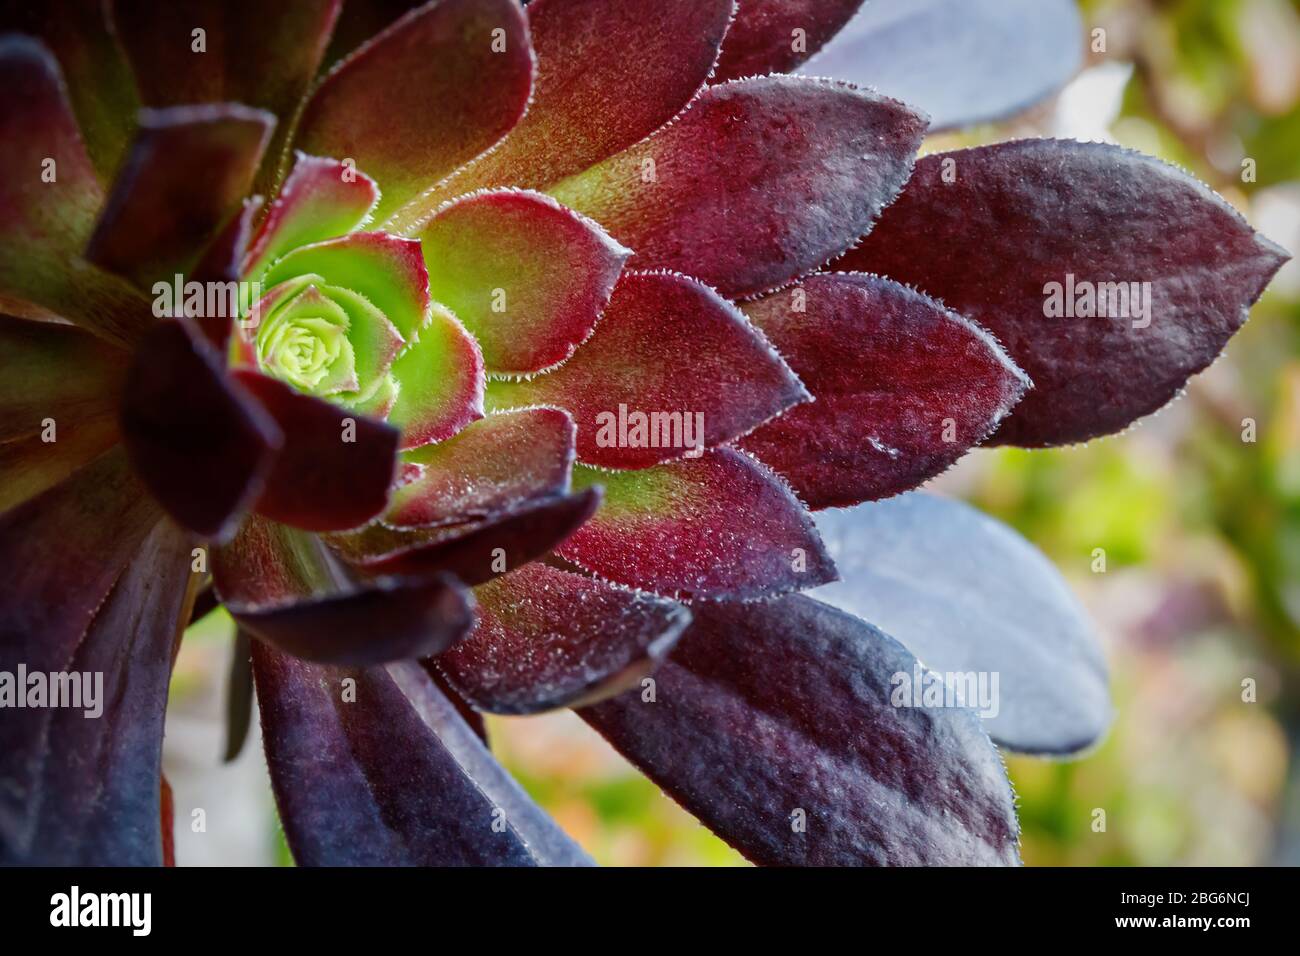 Genre Aeonium de la grande famille des Crassulaceae. Les feuilles, charnelles et enflées, forment des rosettes symétriques et ont des couleurs de vert clair à foncé Banque D'Images